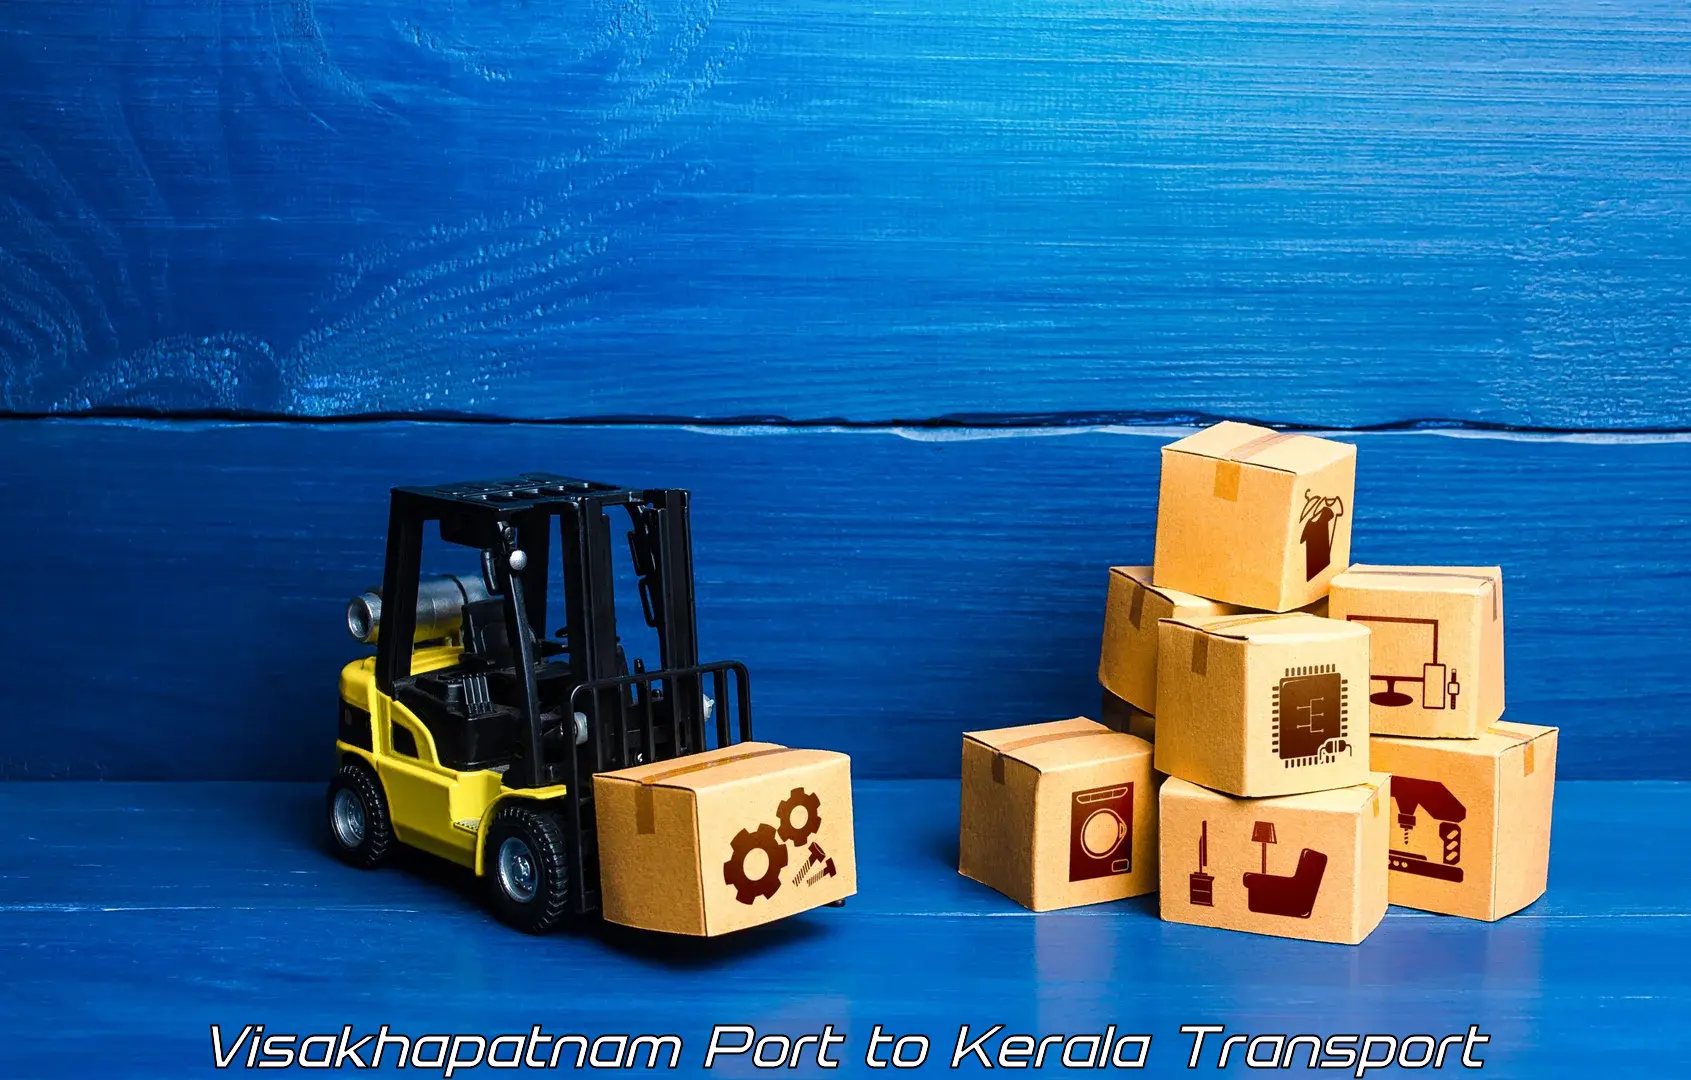 Pick up transport service Visakhapatnam Port to Kothamangalam